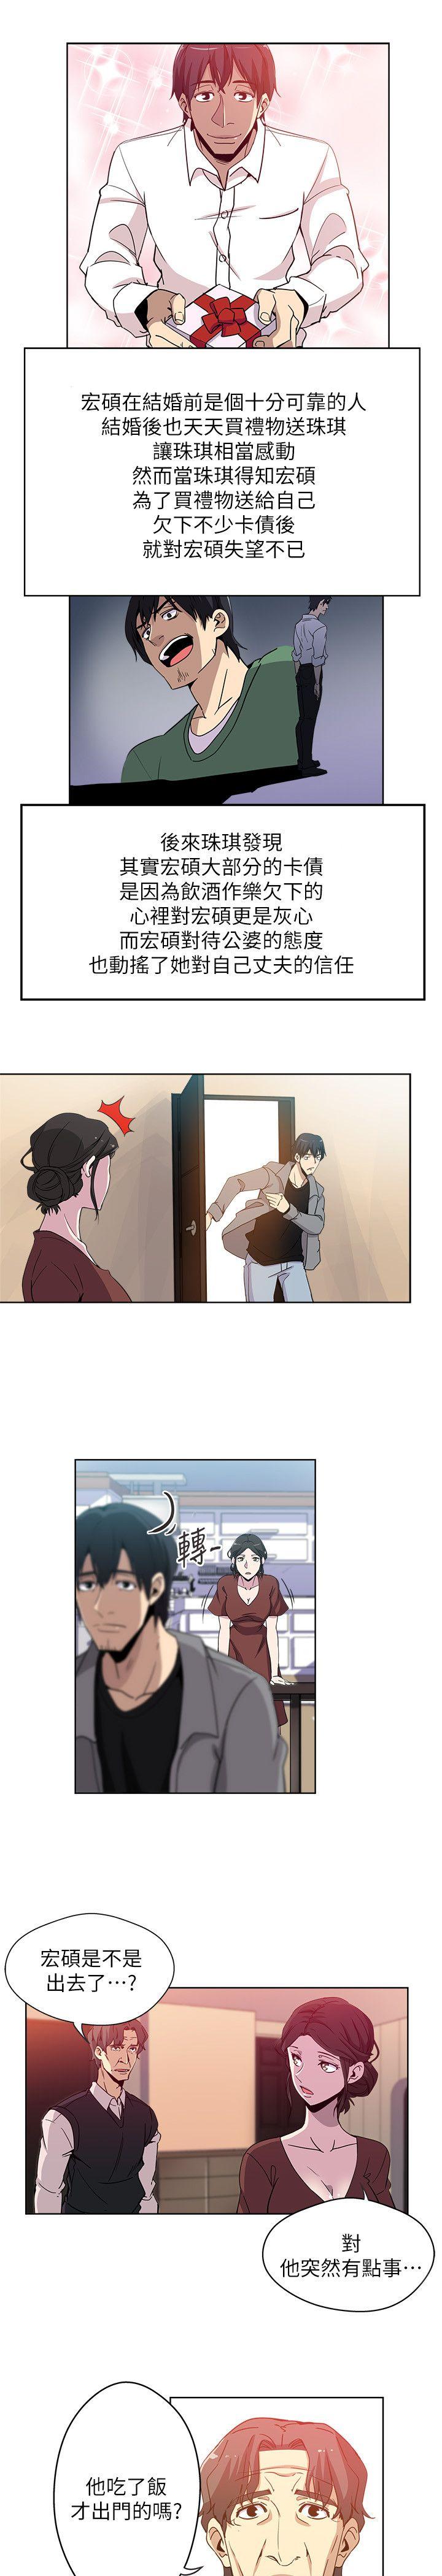 韩国污漫画 新媳婦 第1话-危险关系的序幕 20